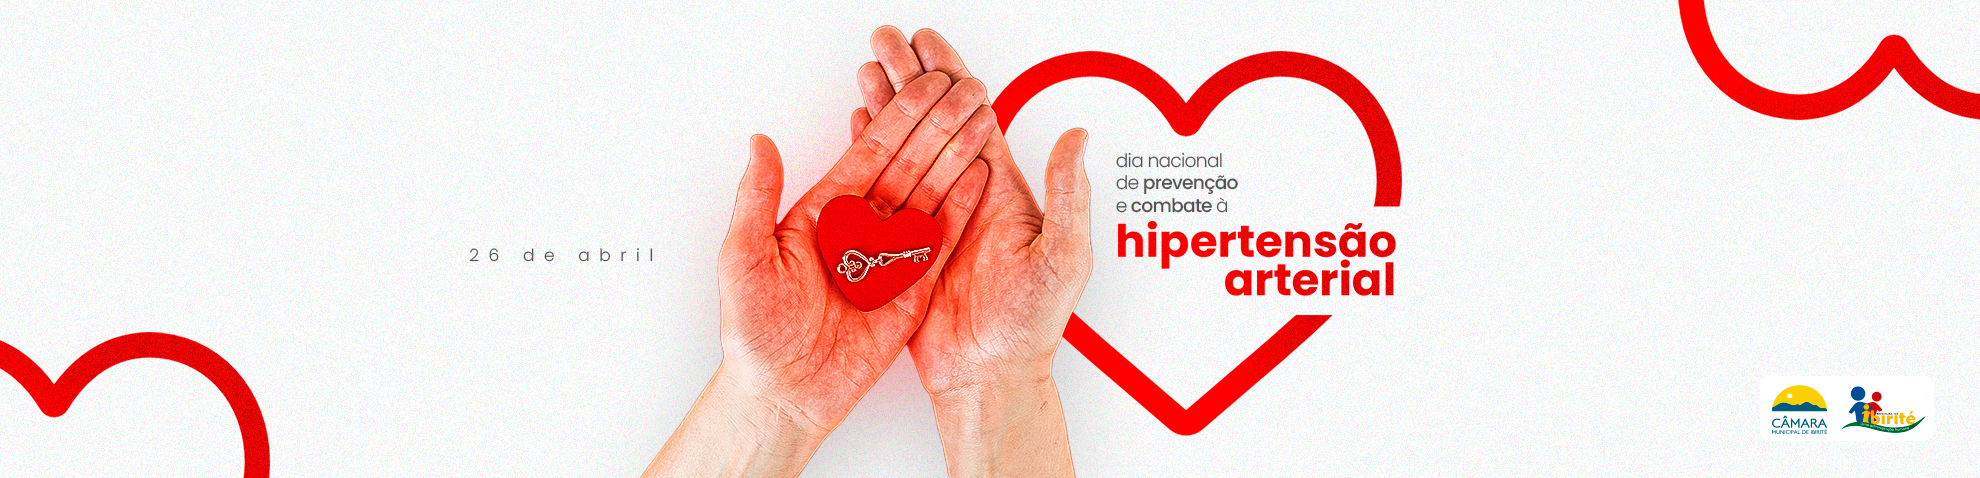 26 de abril - Dia Nacional de Preveno e Combate  Hipertenso Arterial